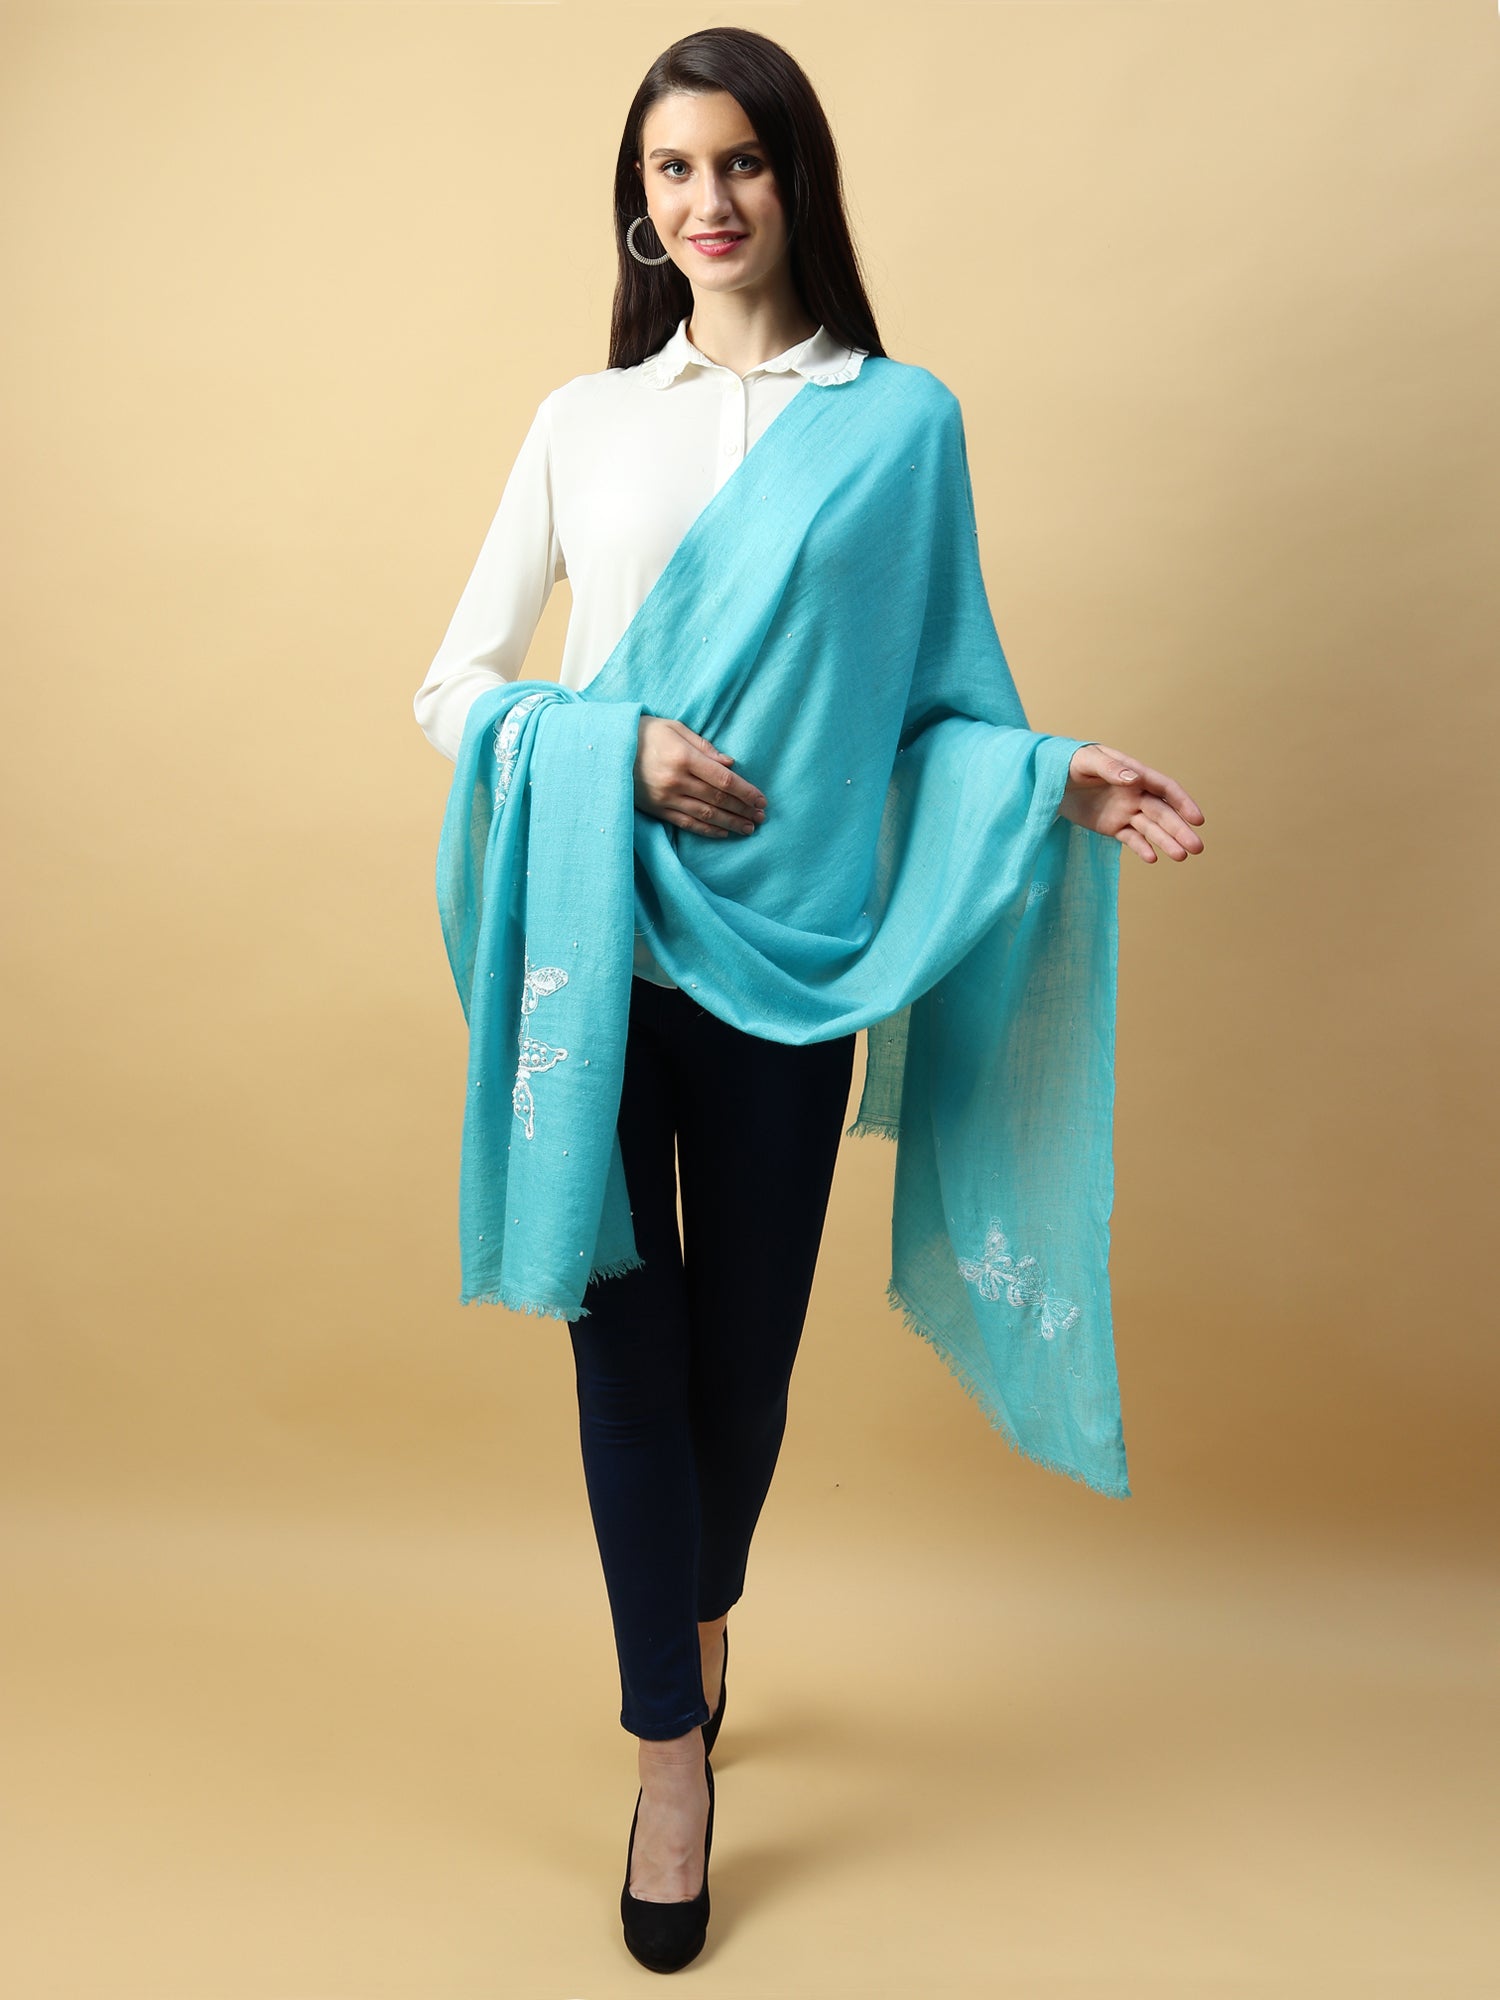 branded shawls, wedding shawls & bridal shawls by modarta 